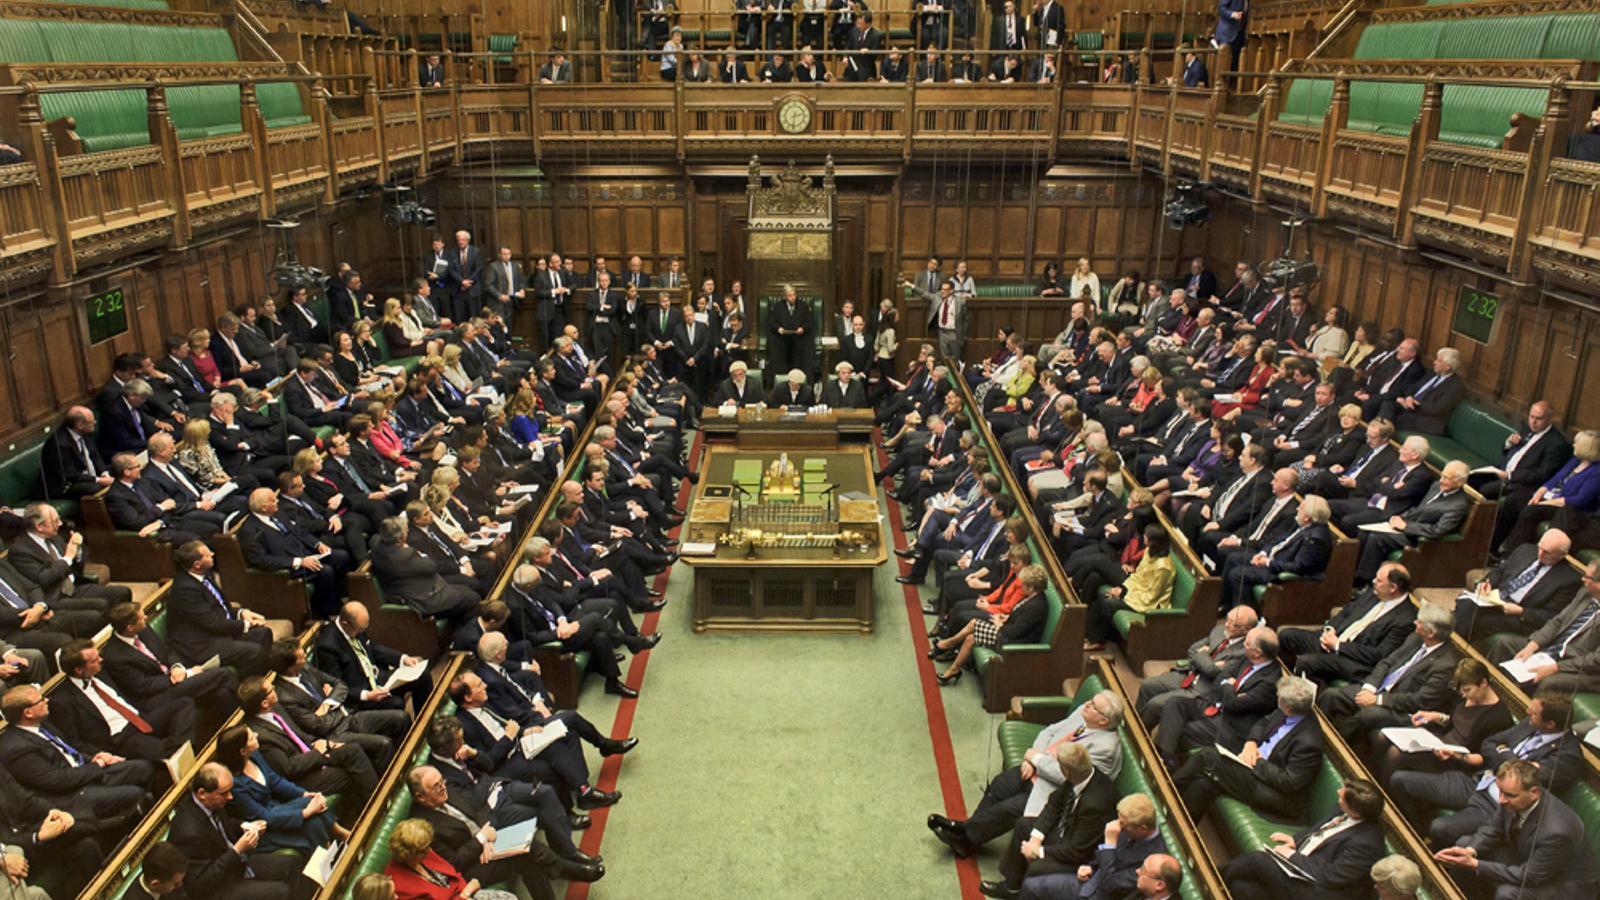 Un aspecte de la Cambra del Comuns del Parlament britànic / HOC